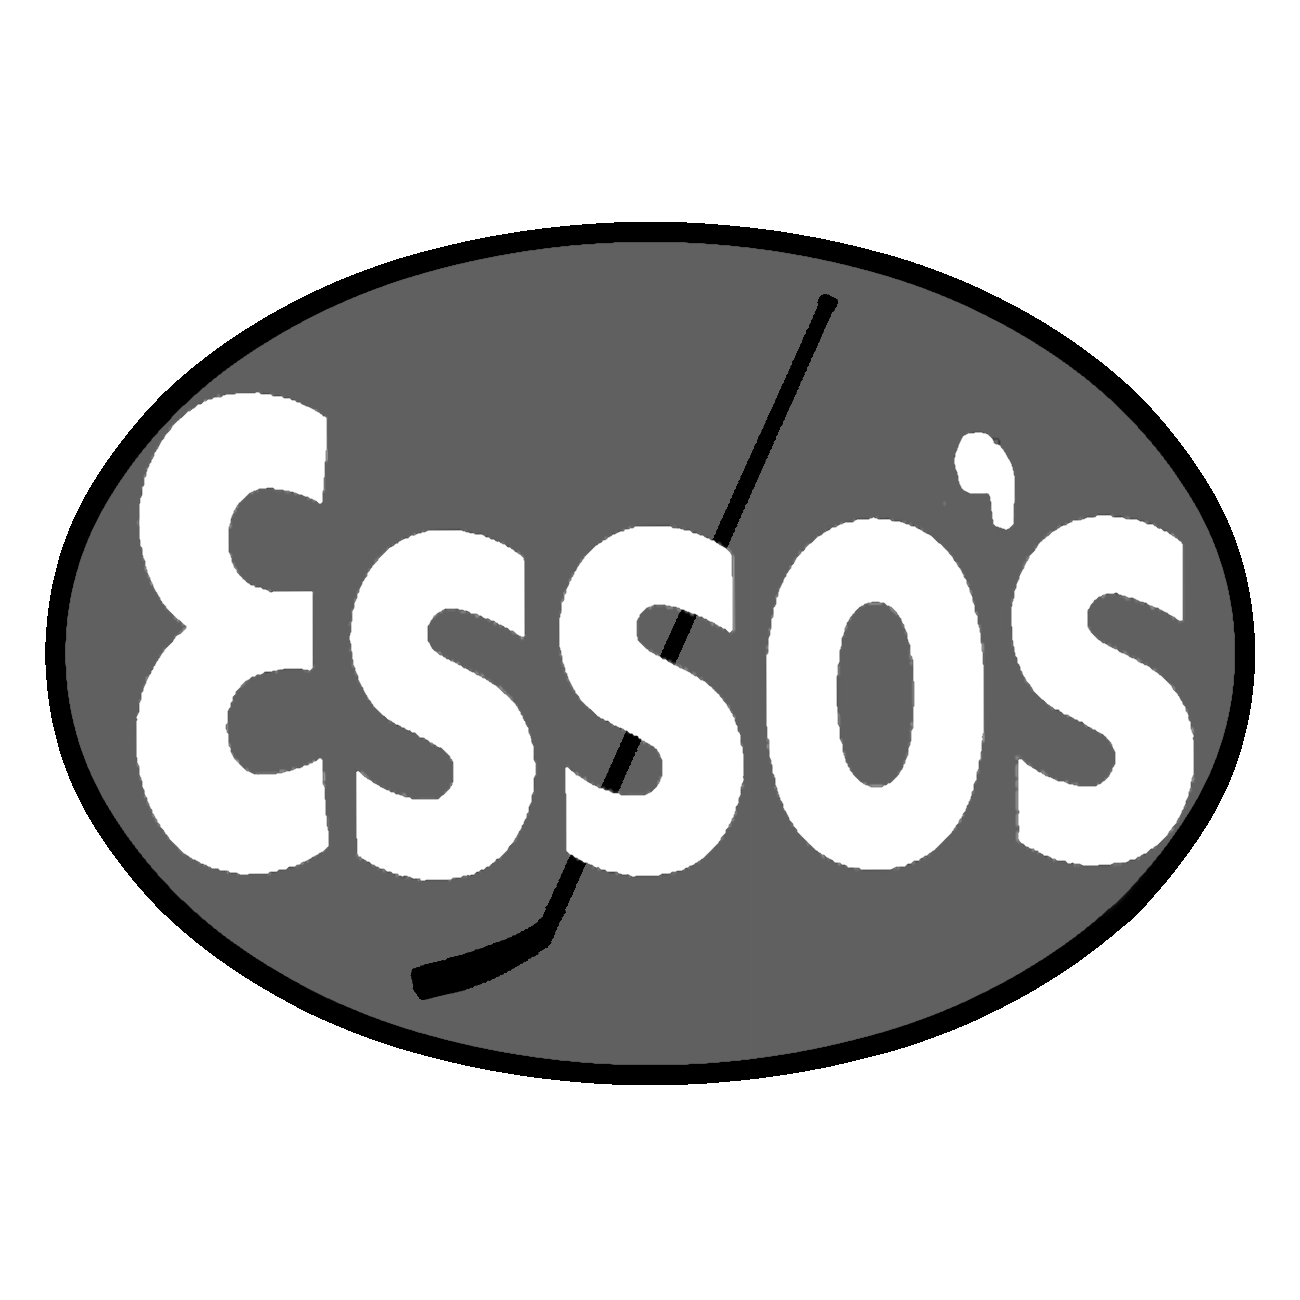 Vernon Essos Logo 1971-72